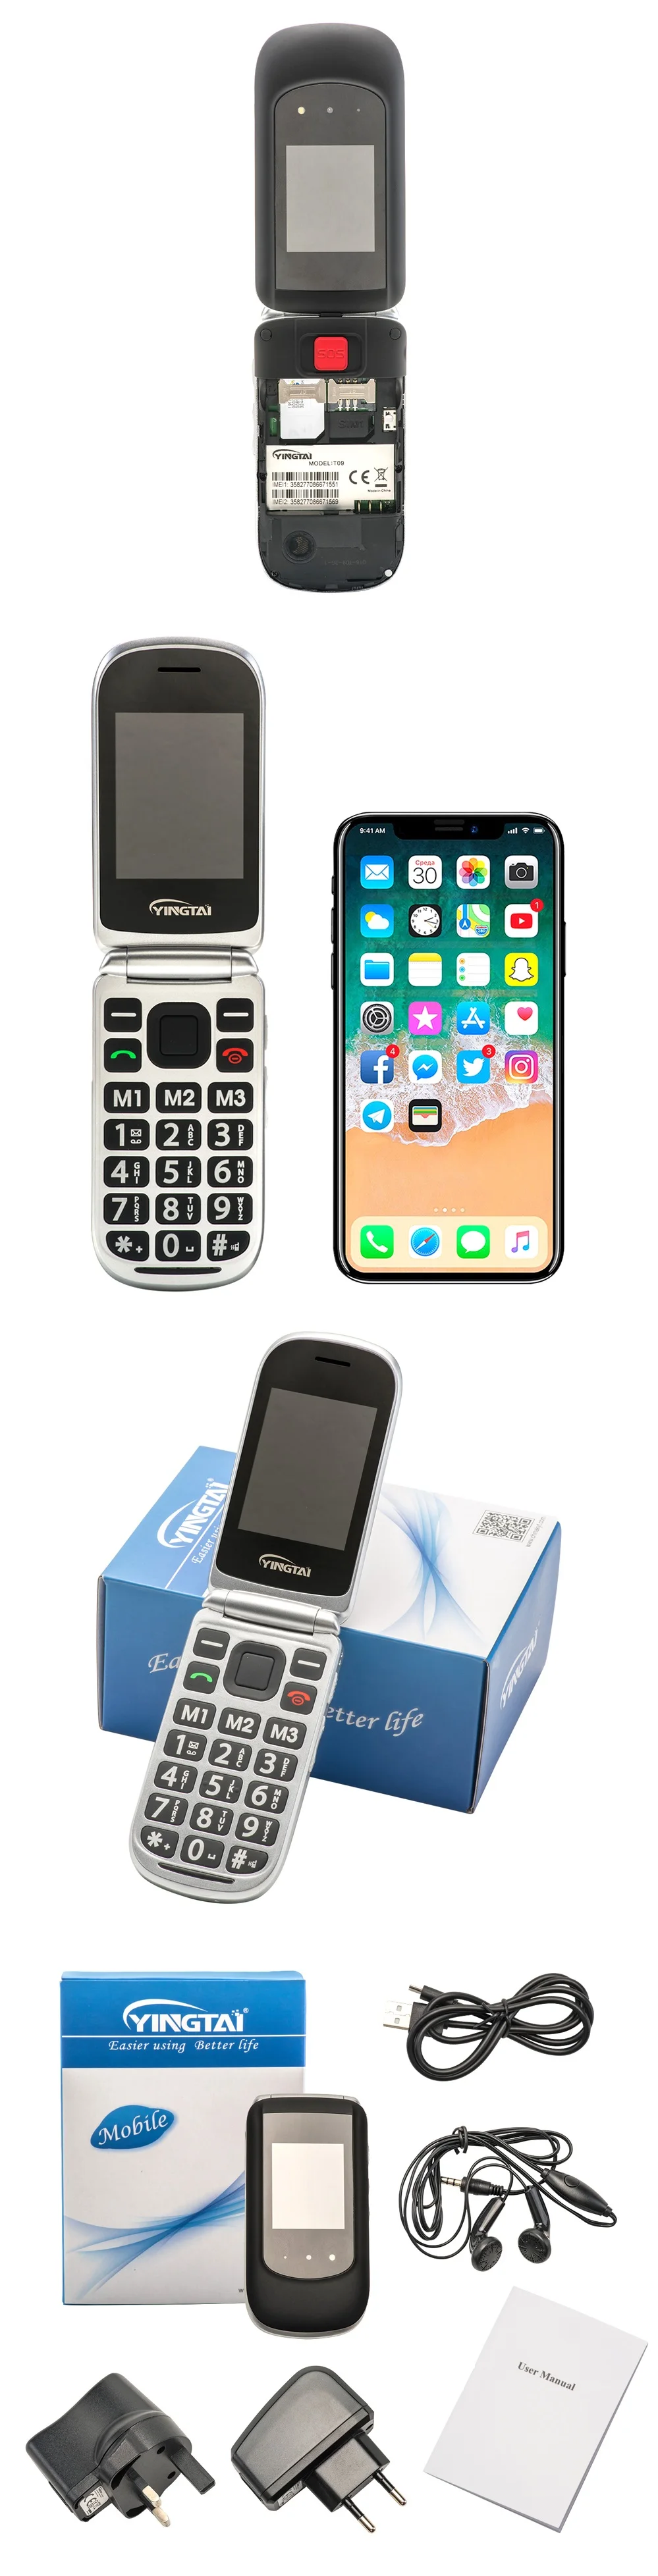 YINGTAI T09 Лучшая функция телефон GSM Большой кнопочный флип-телефон двойной экран раскладушка 2,4 дюймов телефон сотовый телефон FM MP3